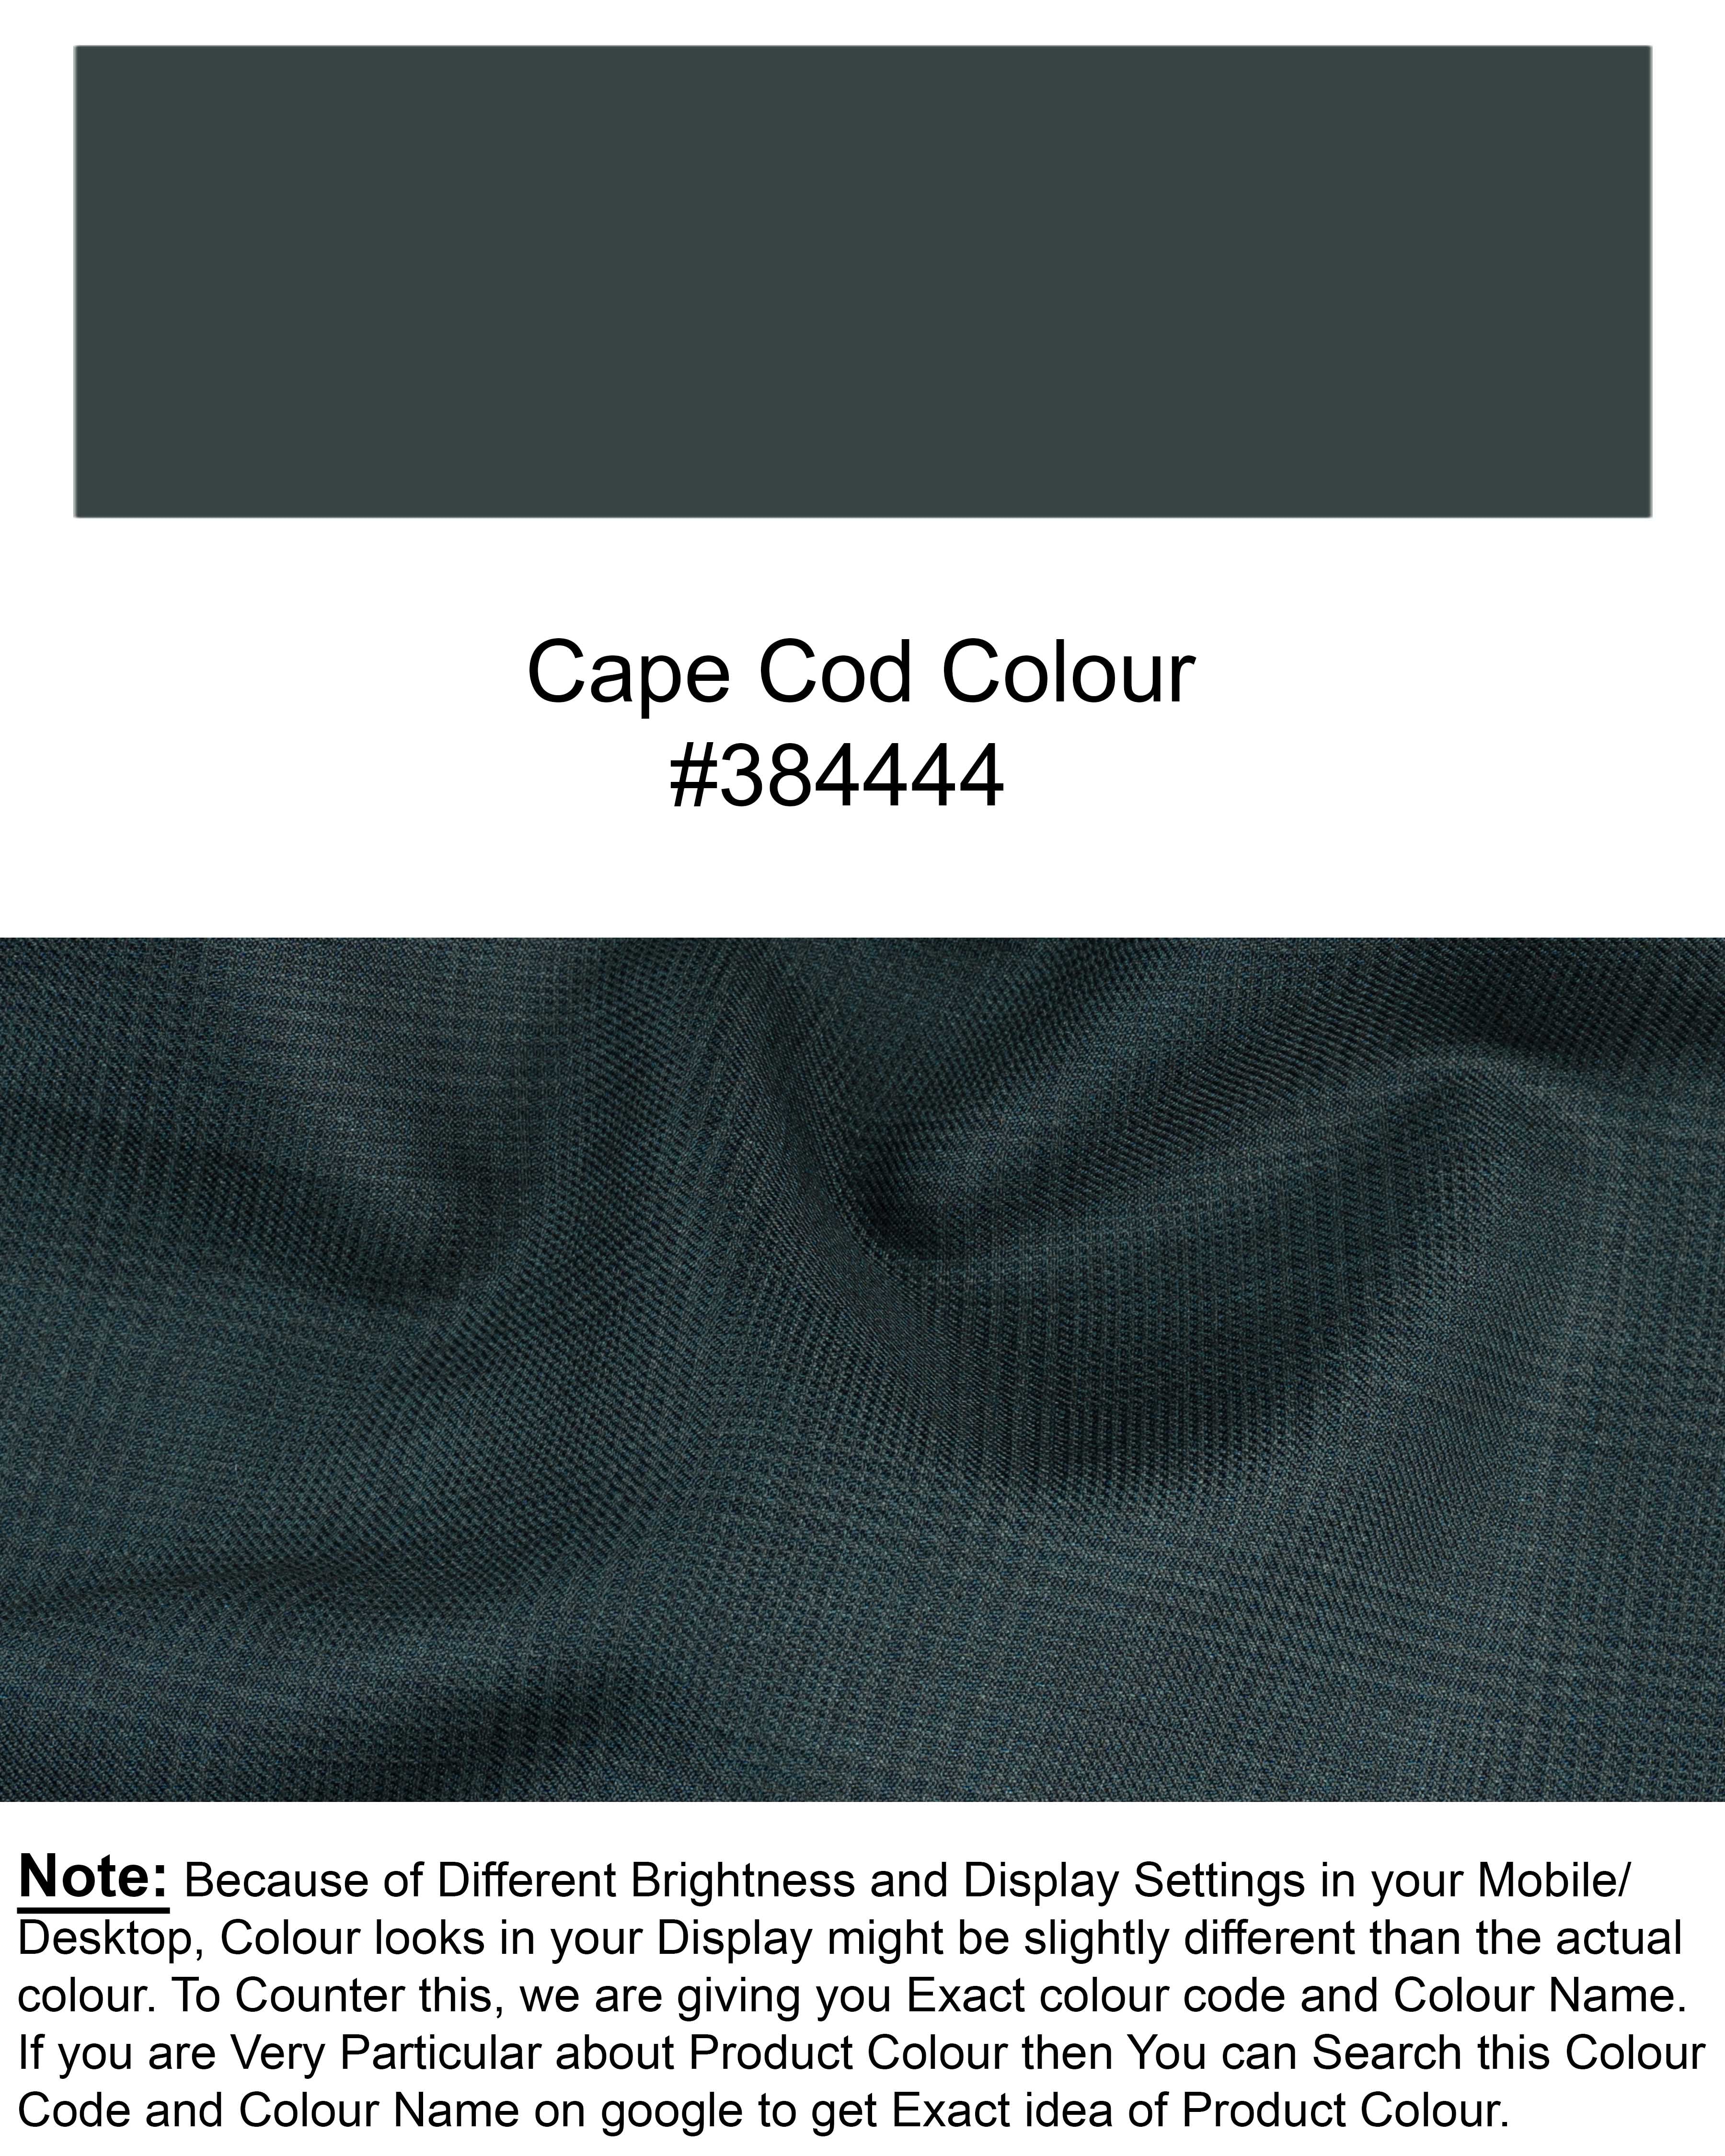 Cape Cod Green Subtle Plaid Waistcoat V1747-36, V1747-38, V1747-40, V1747-42, V1747-44, V1747-46, V1747-48, V1747-50, V1747-52, V1747-54, V1747-56, V1747-58, V1747-60